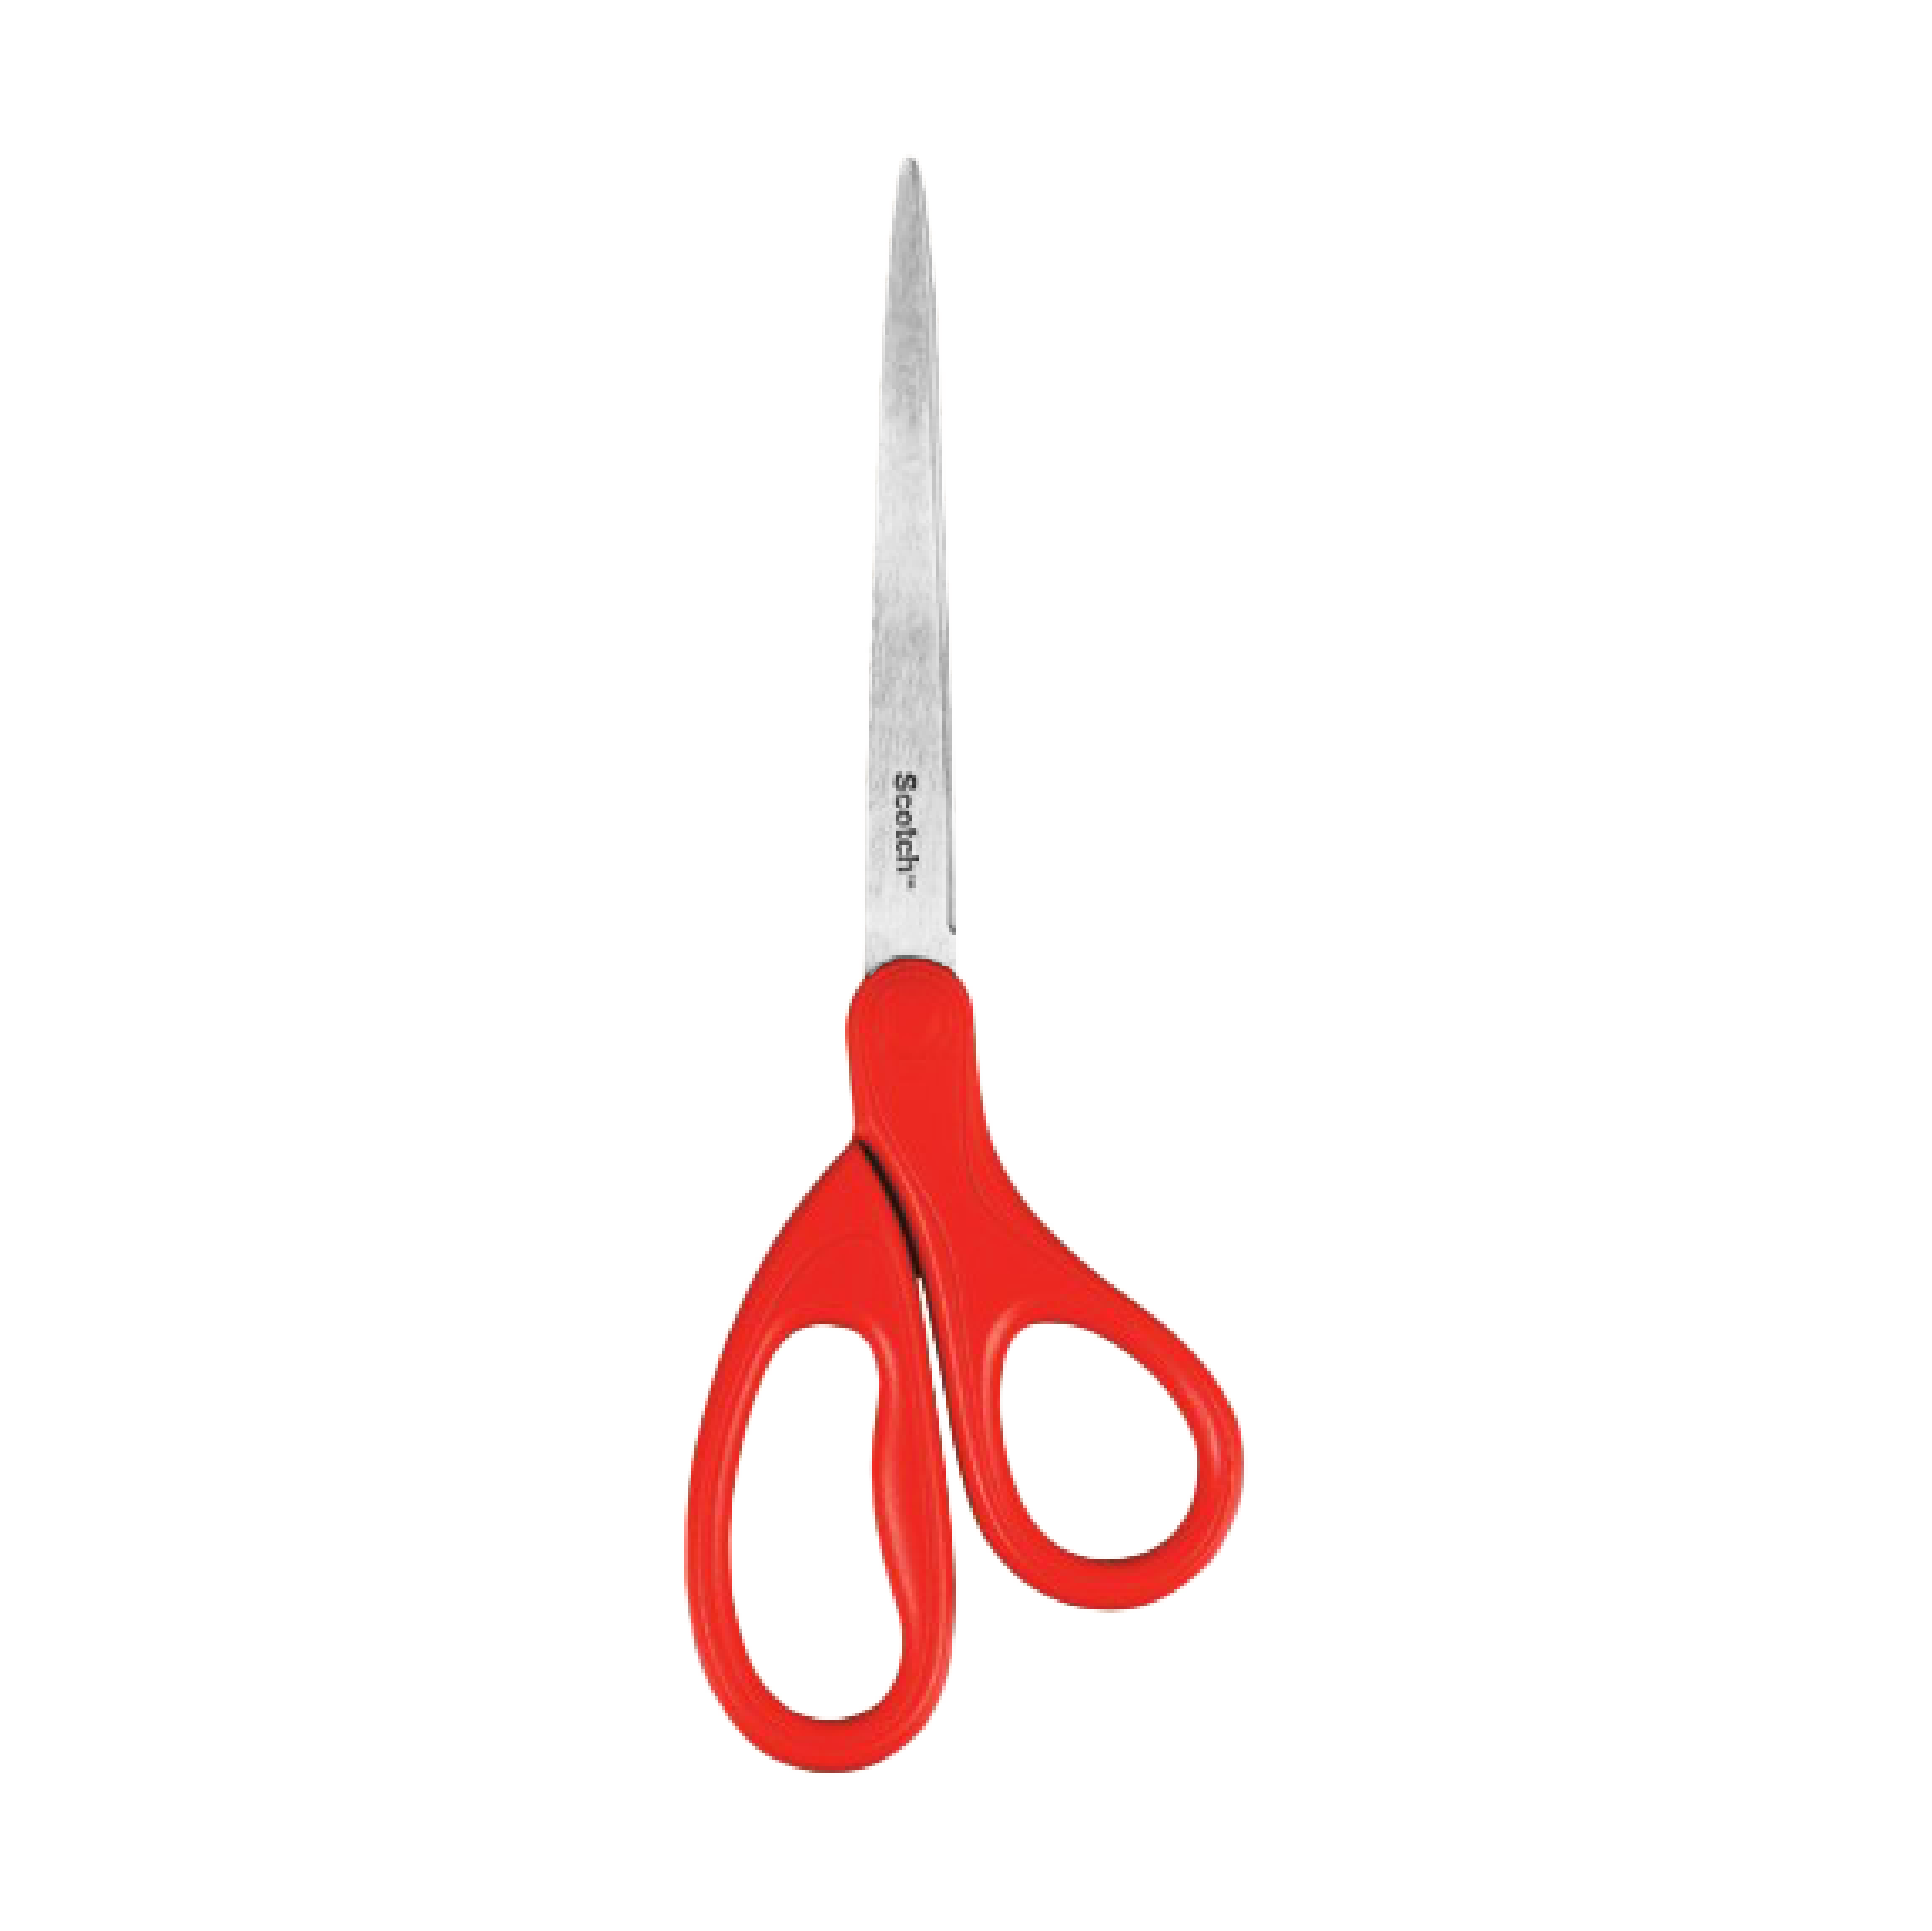 https://aotsqatar.com/cdn/shop/files/1407-home-and-office-scissorss-02.png?v=1689707656&width=2501